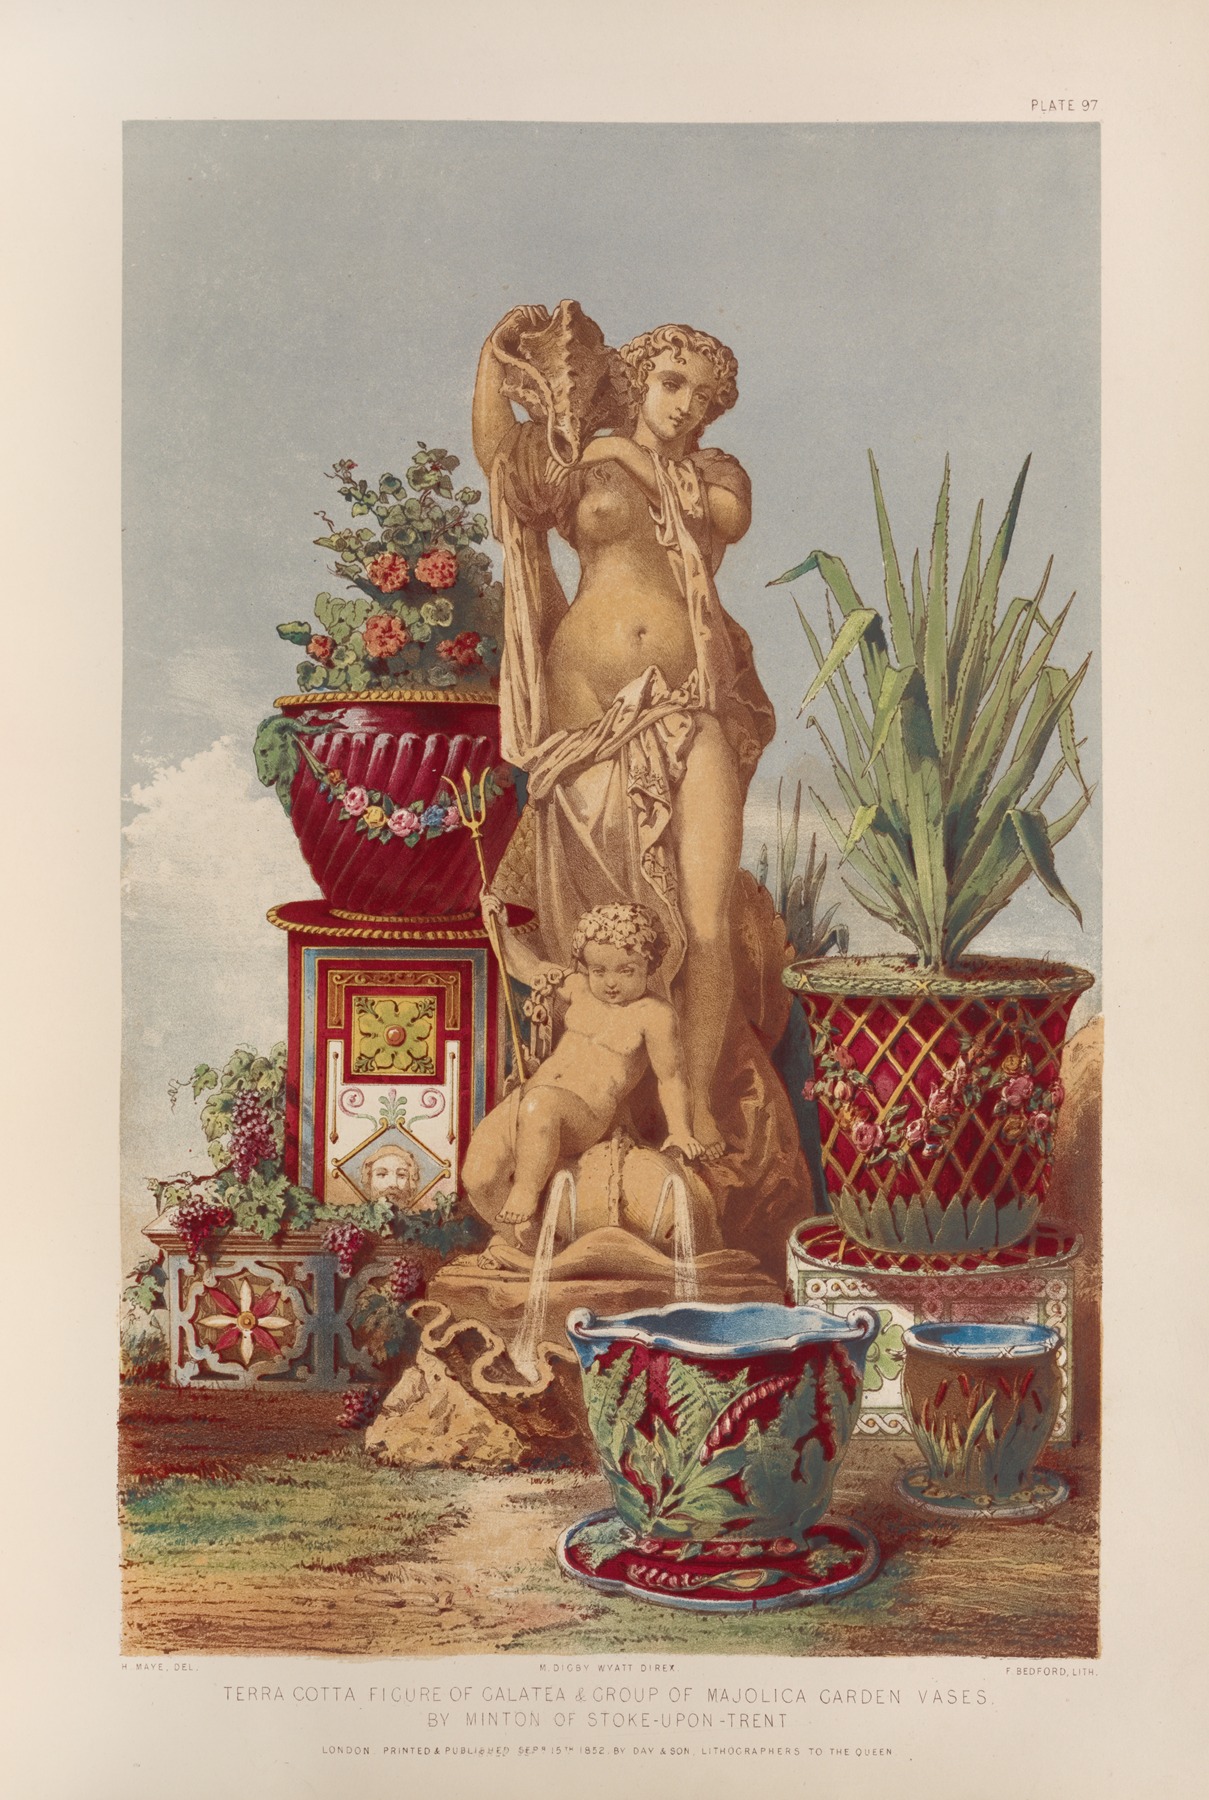 Matthew Digby Wyatt - Terra cotta figure of Galatea & group of majolica garden vases